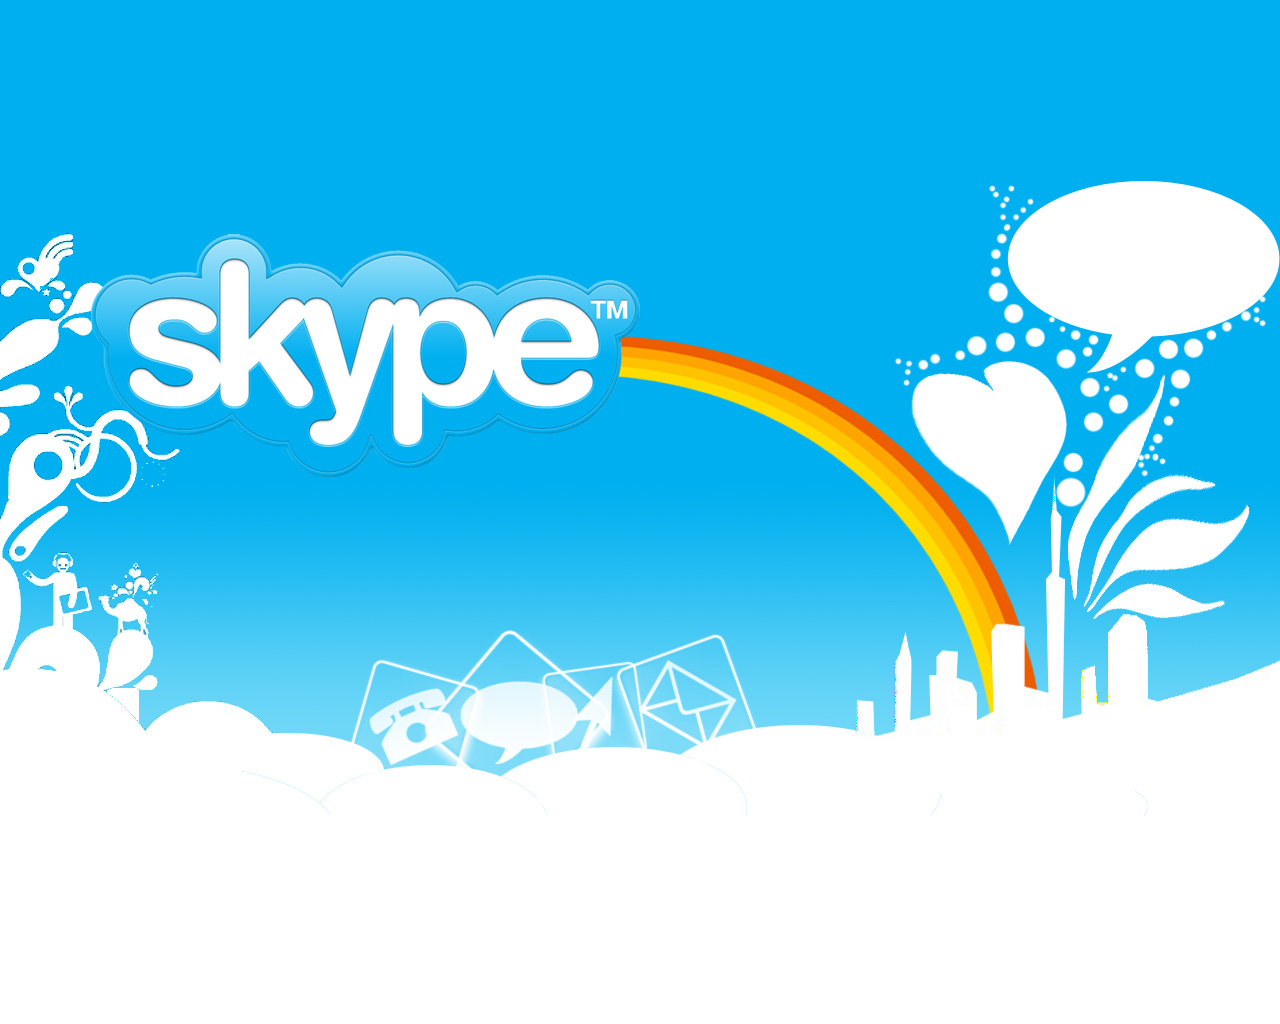 SkypeHide: Keeping Skype Confidential